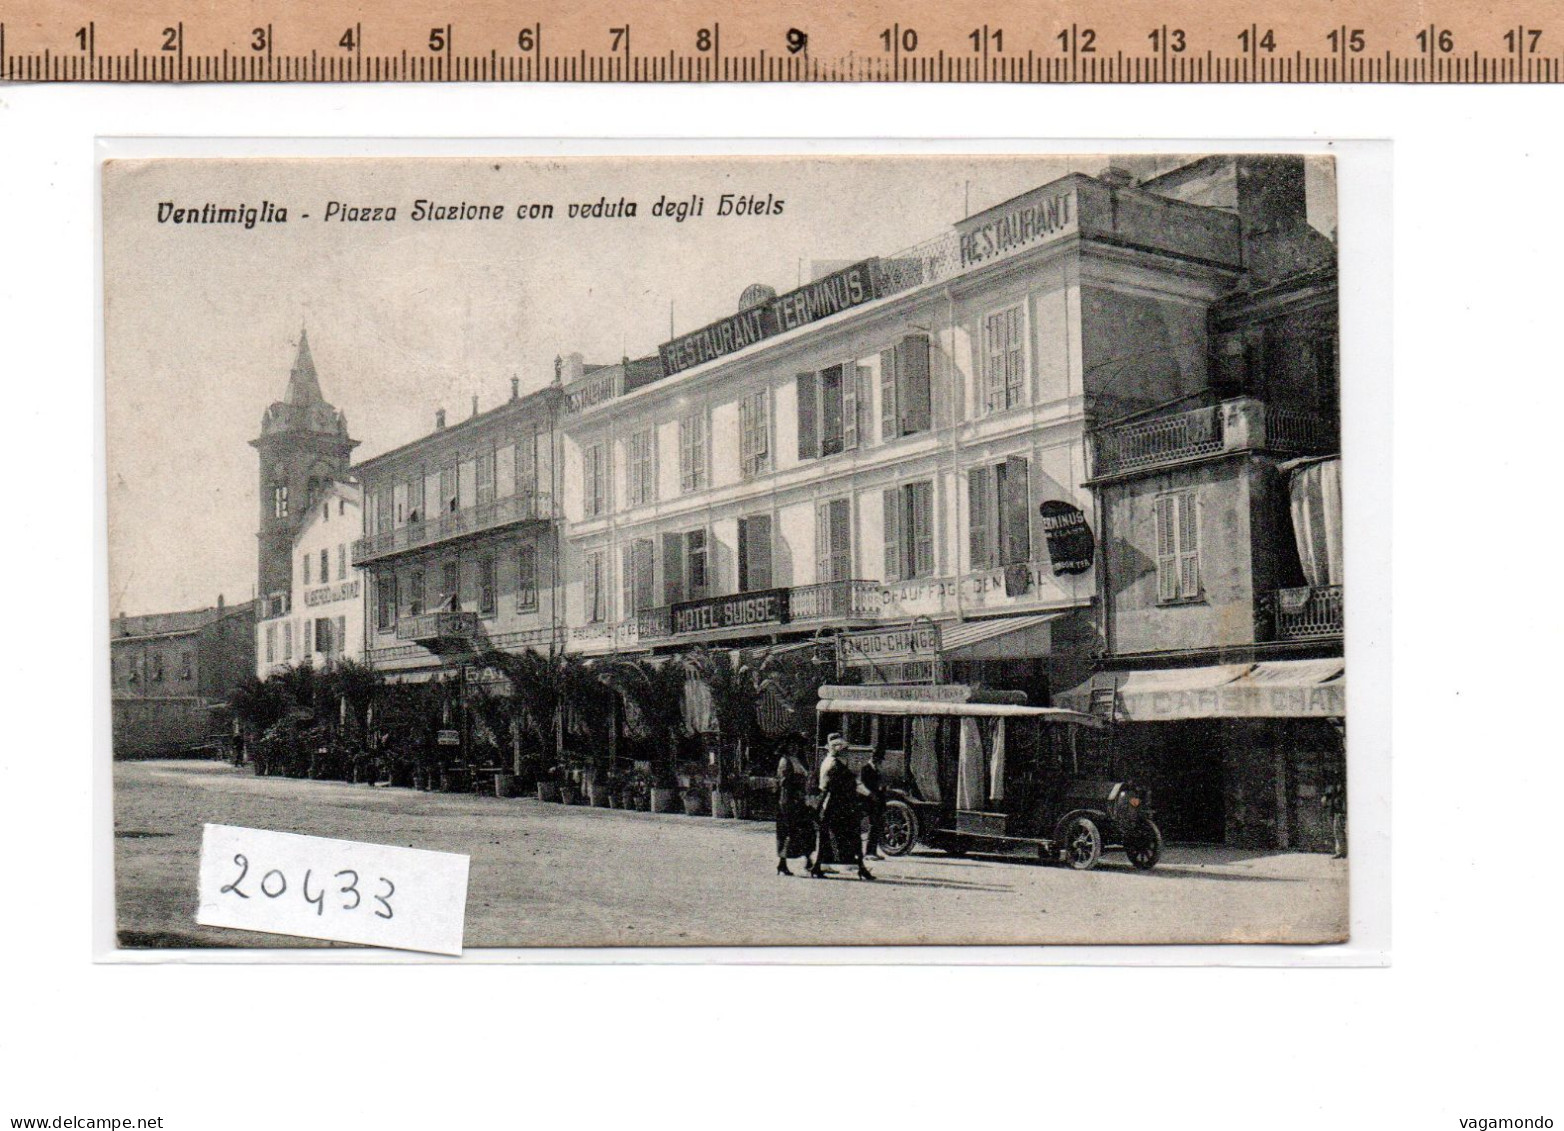 20433 VENTIMIGLIA PIAZZA DELLA STAZIONE CON VEDUTA DEGLI HOTELS  RISTORANTE TERMINUS ANIMATA TAXI D EPOCA  1924 - Imperia